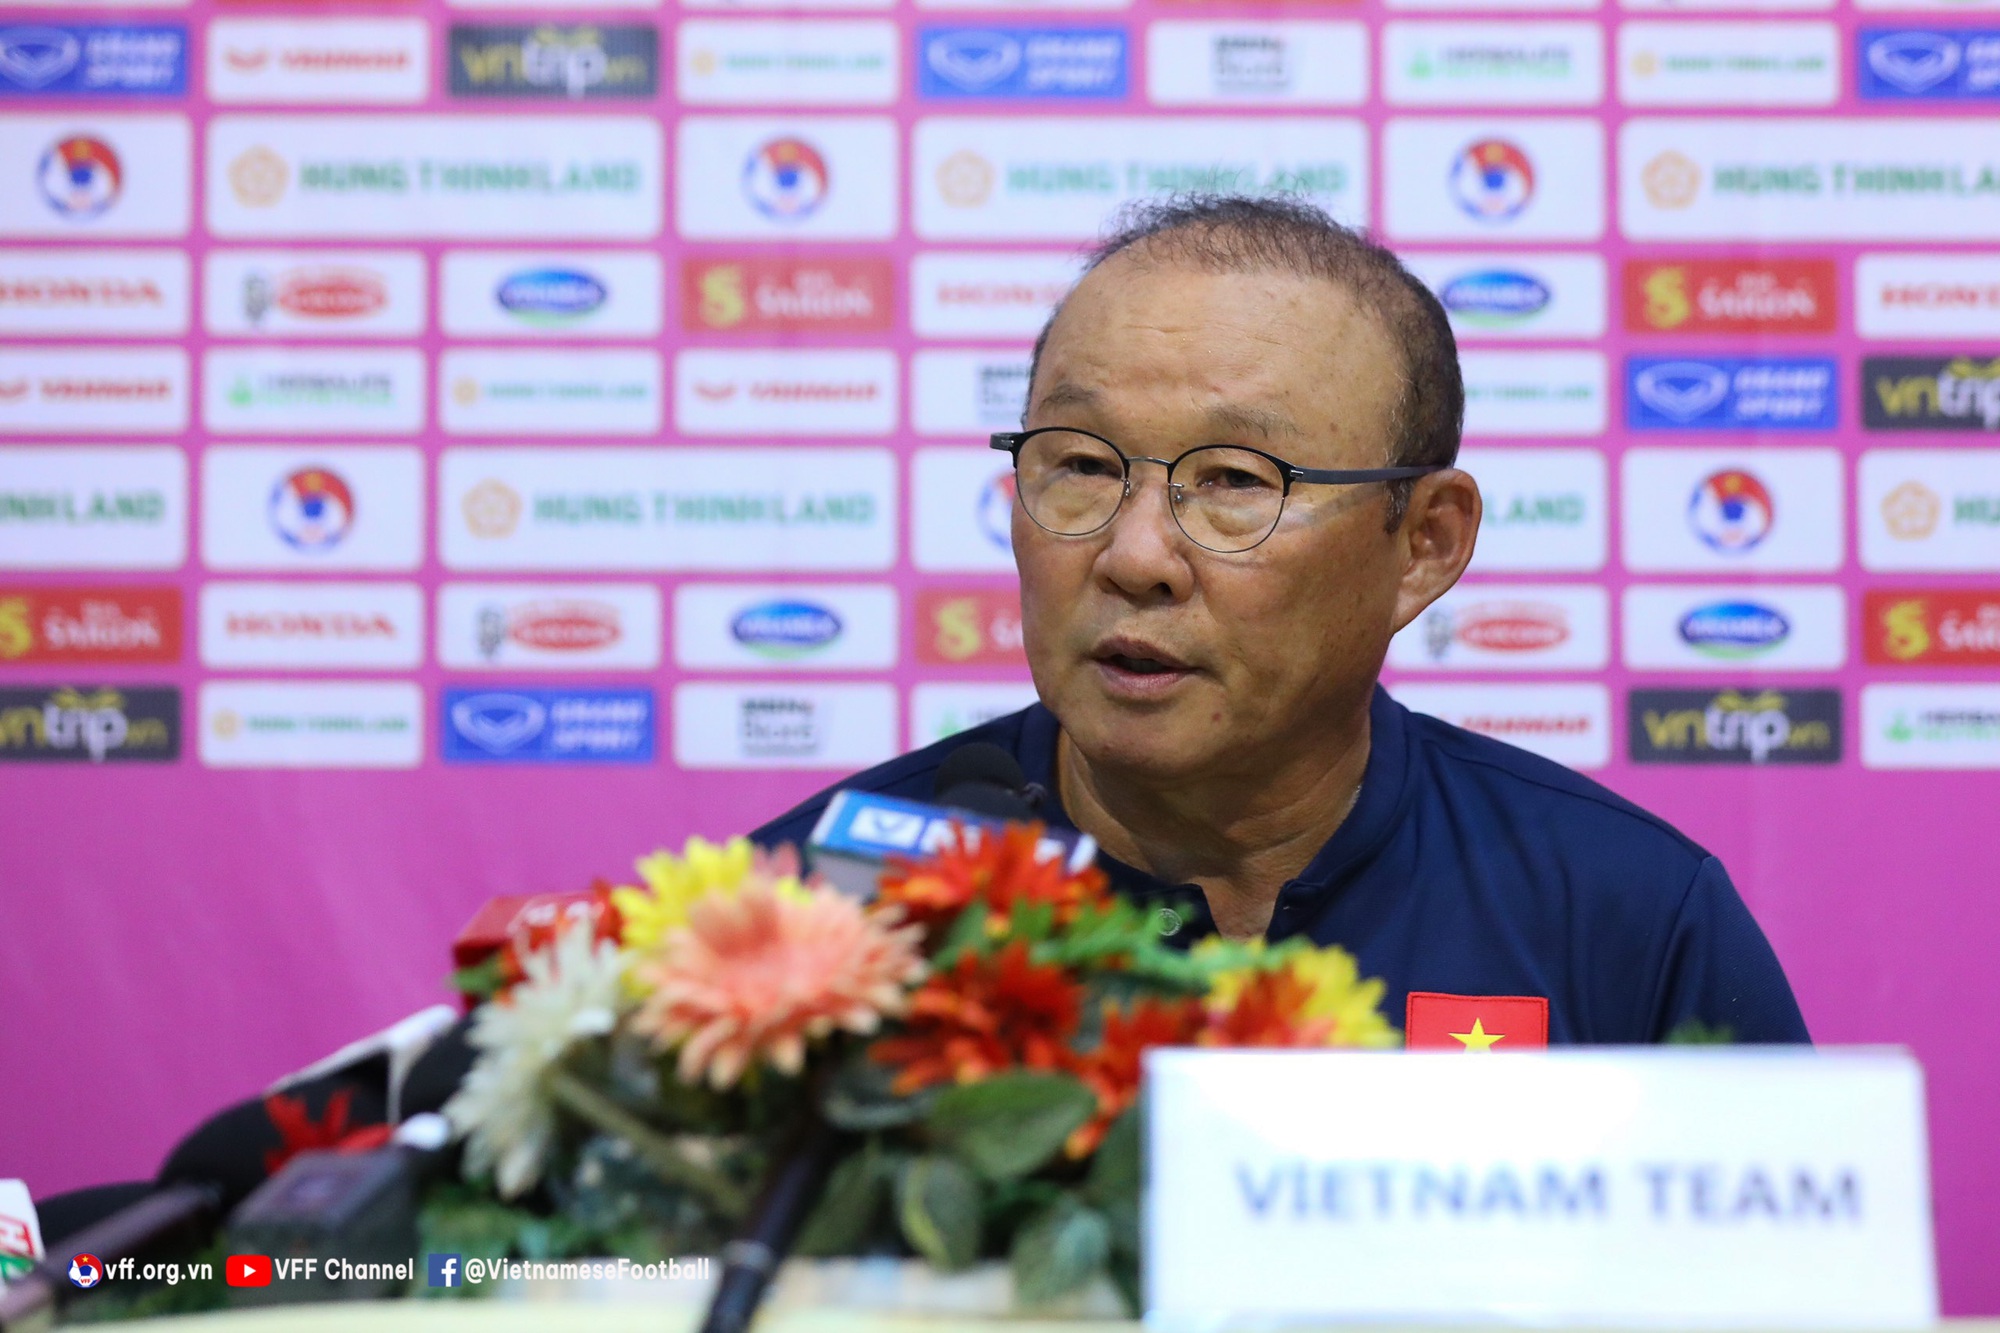 HLV Park Hang-seo nói gì về mục tiêu dự World Cup 2030 của ĐT Việt Nam? - Ảnh 1.